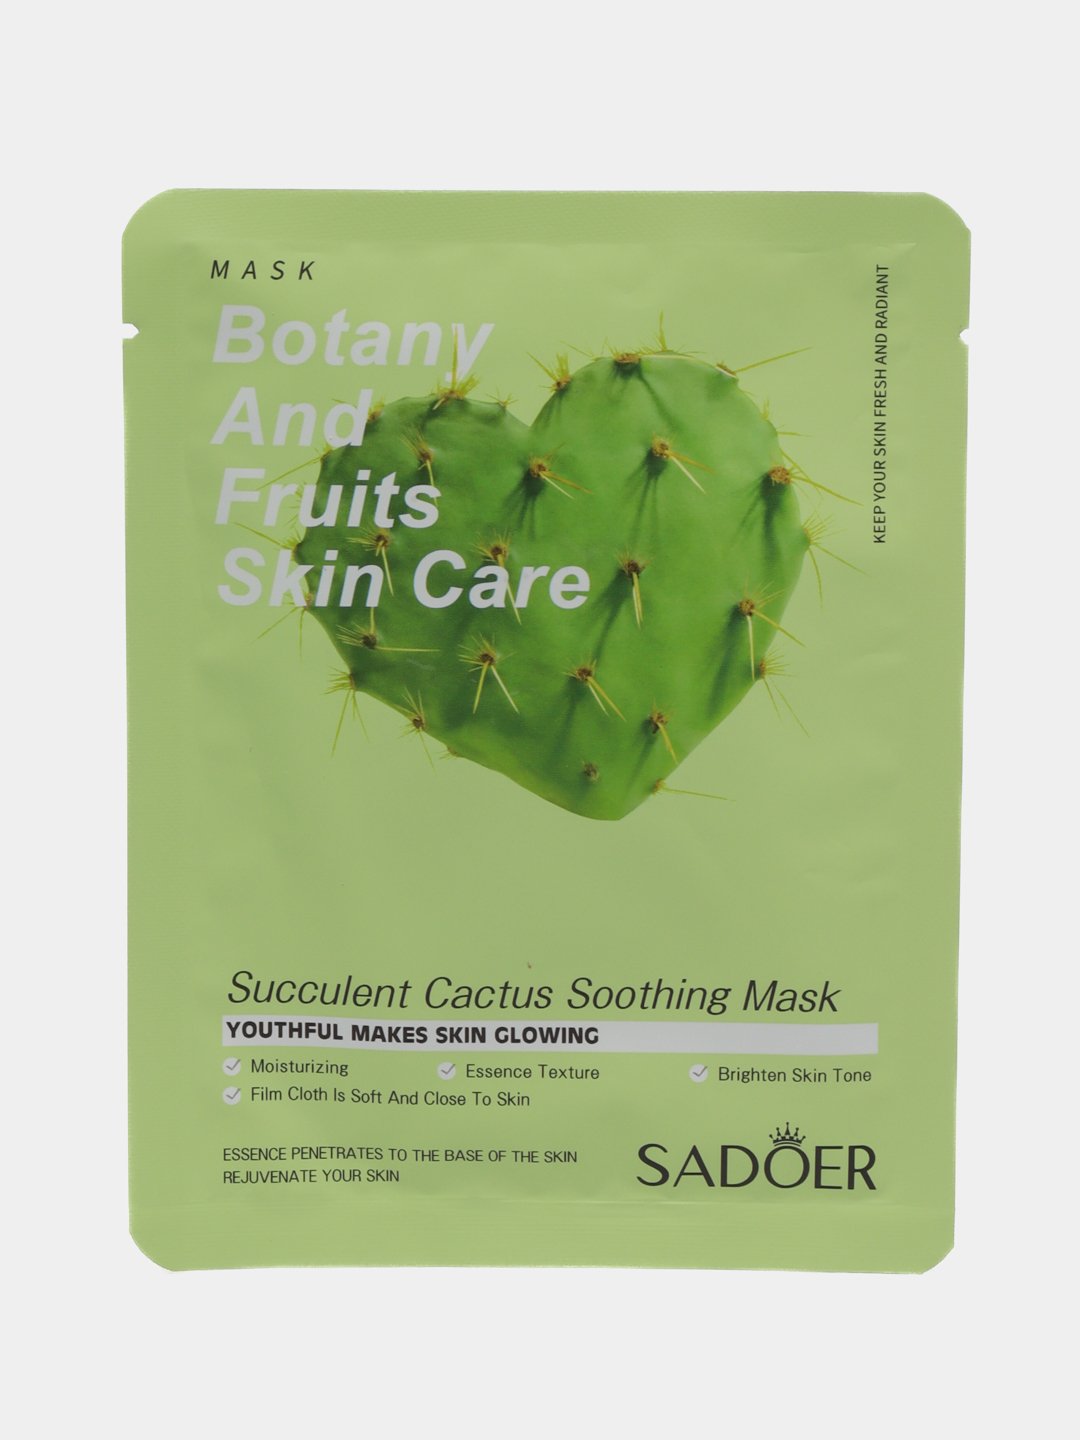 Маски sadoer отзывы. Sadoer маска для лица. Sadoer набор масок для лица. Succulent Cactus Soothing Mask. Маска тканевая sadoer Кактус.